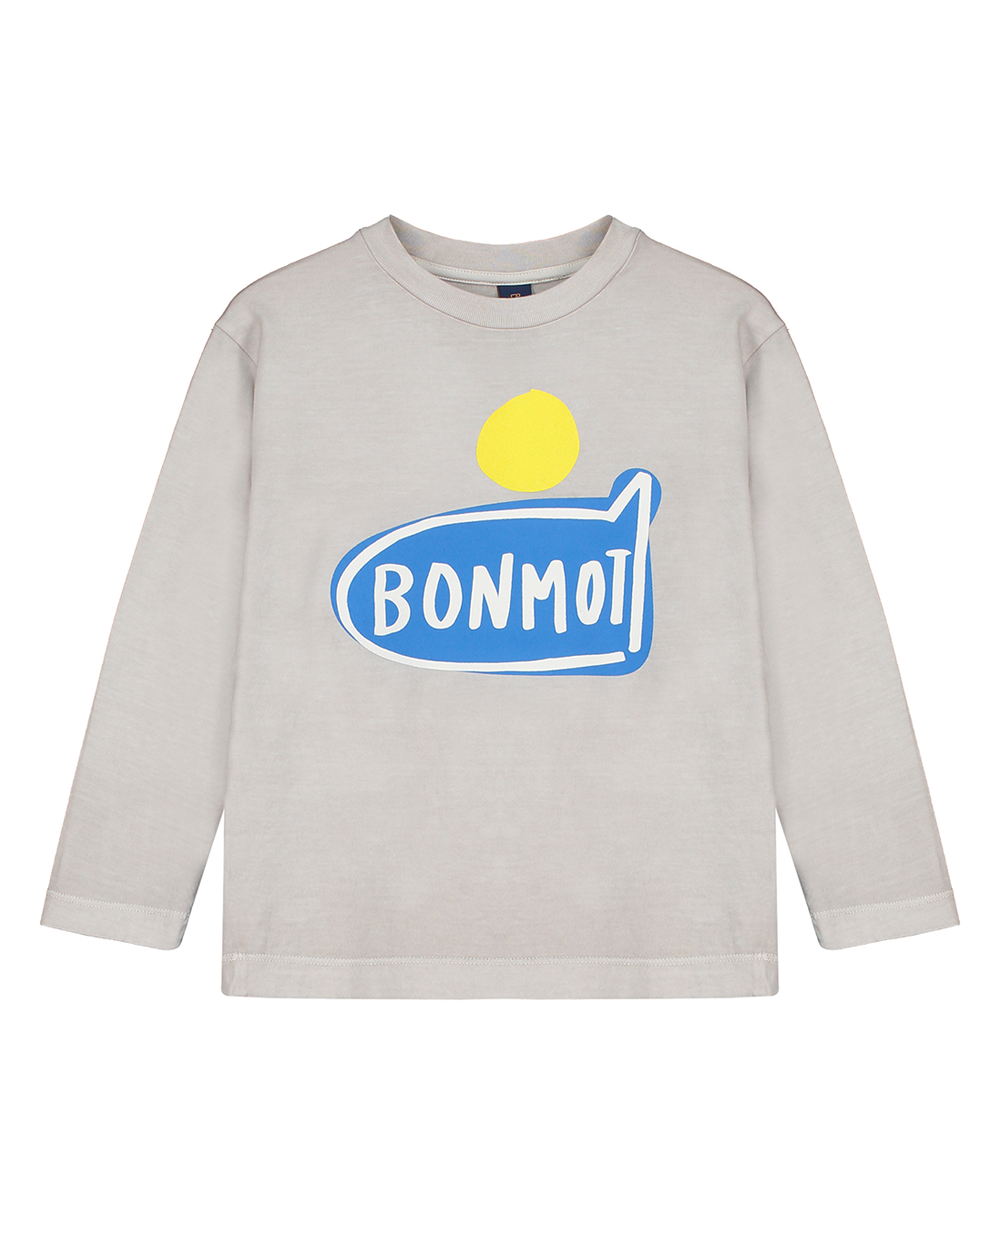 [BONMOT] T-shirt bonmot plane grey